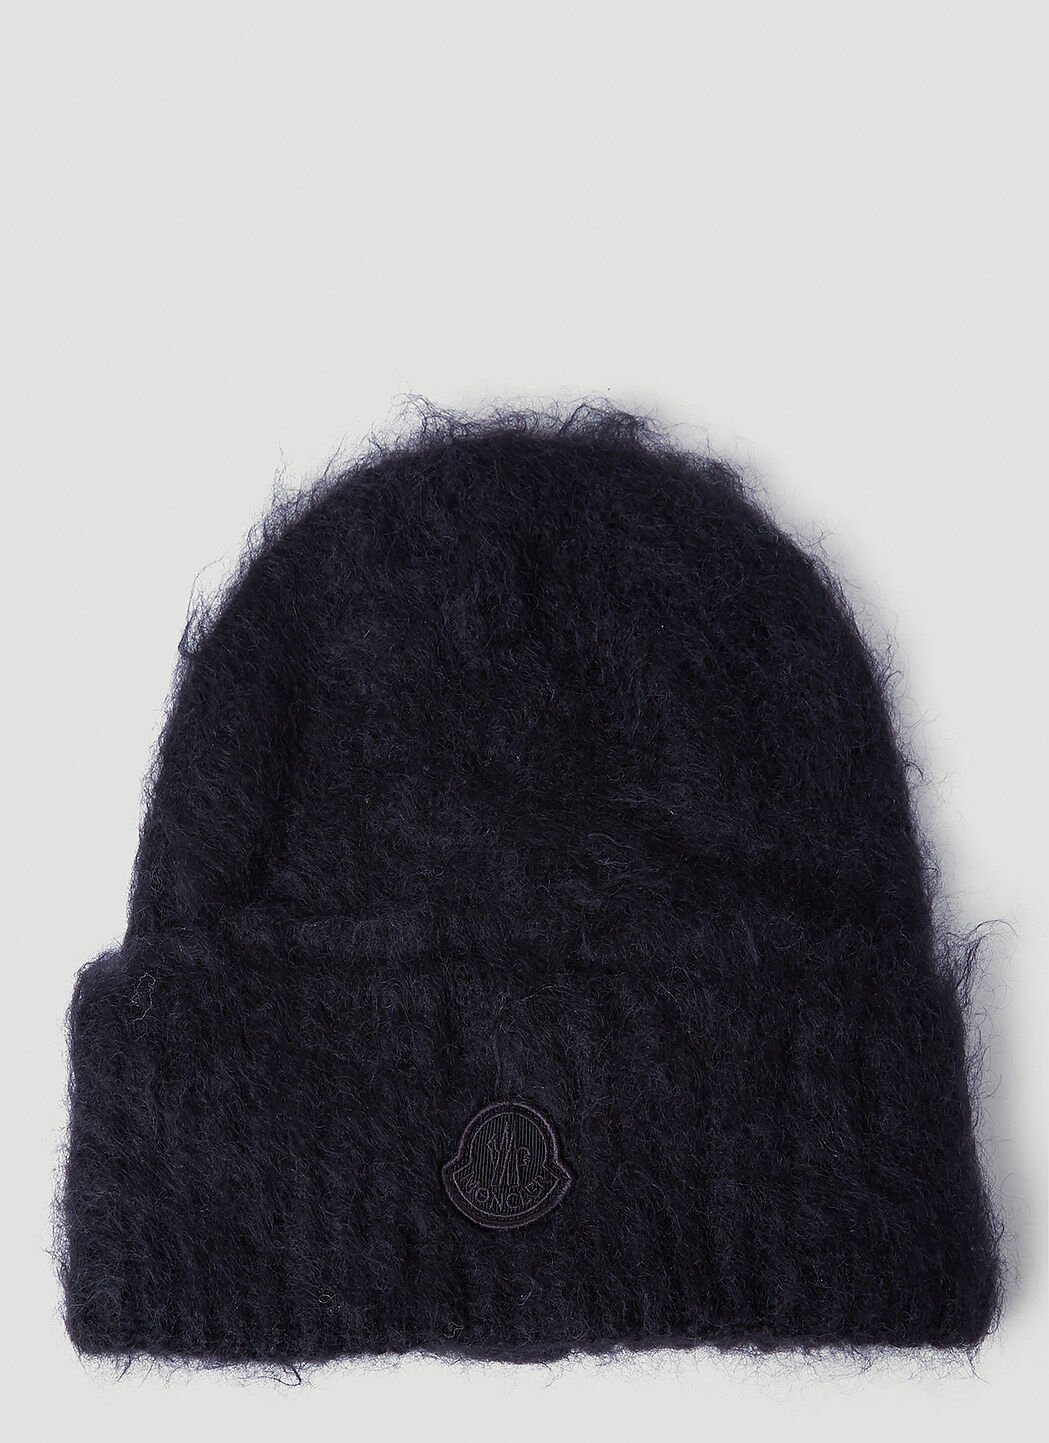 Acne Studios Fuzzy Knit Beanie Hat Beige acn0257001